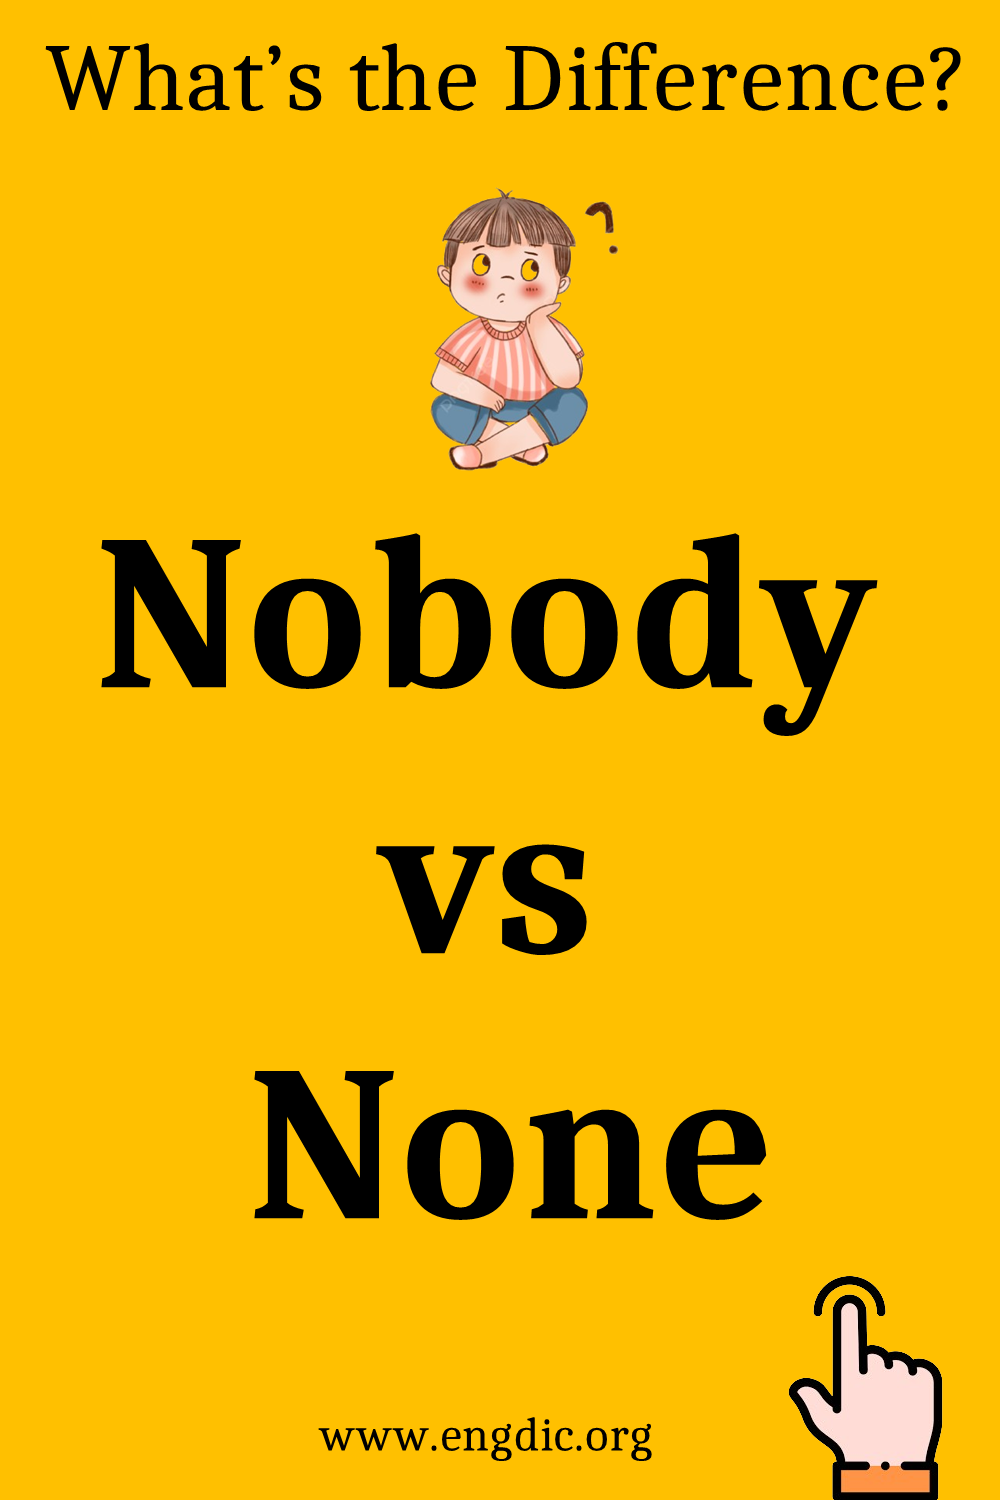 Nobody vs None